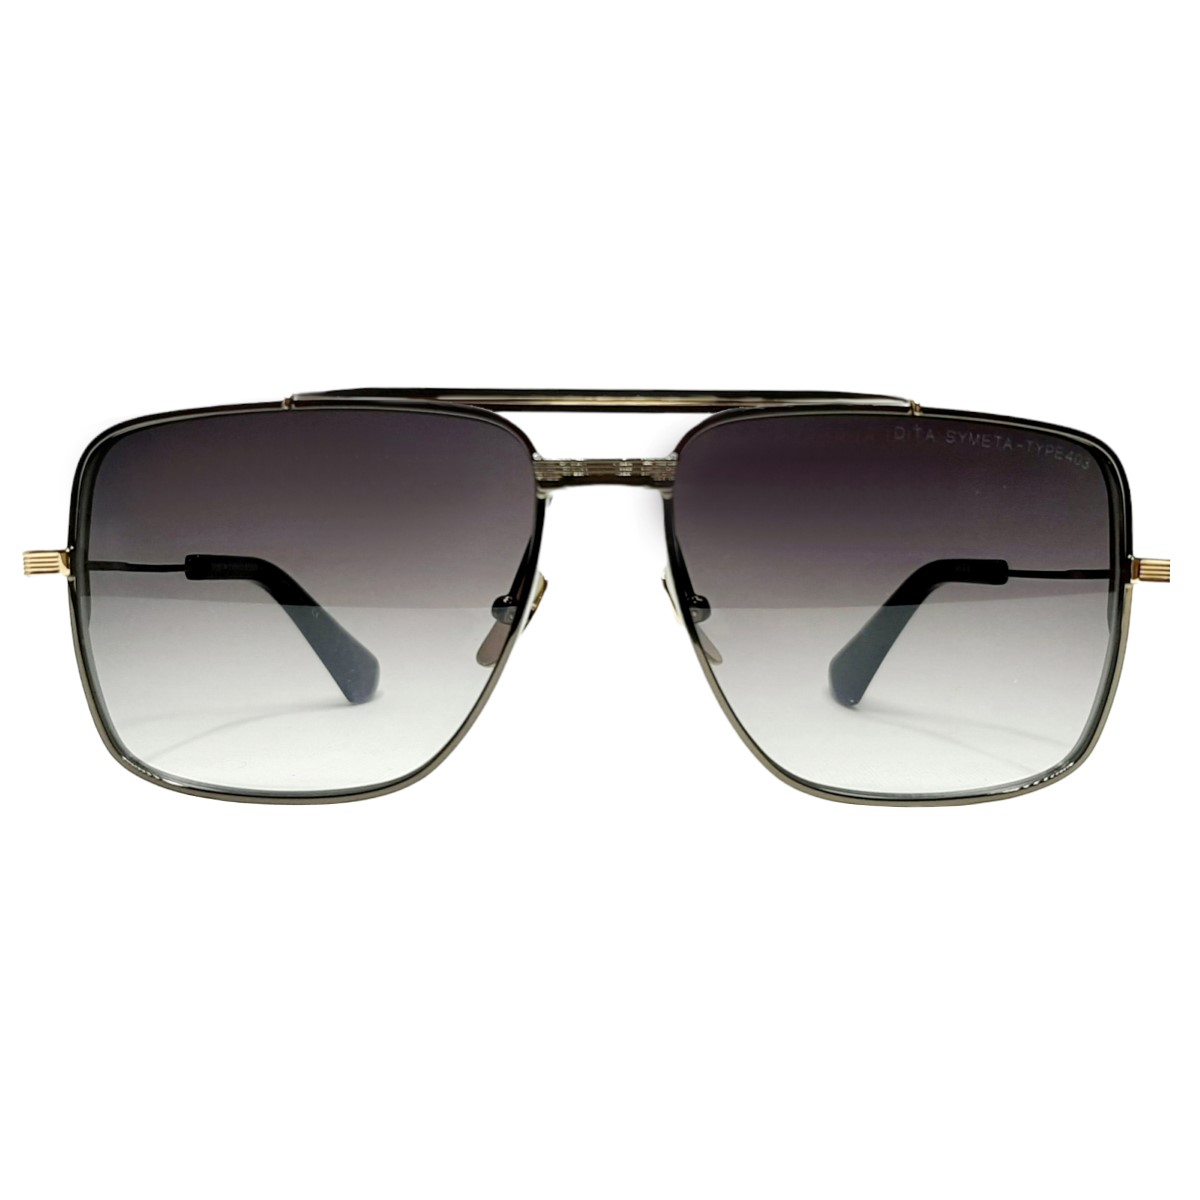 عینک آفتابی دیتا مدل SYMETATYRE403DTS12603